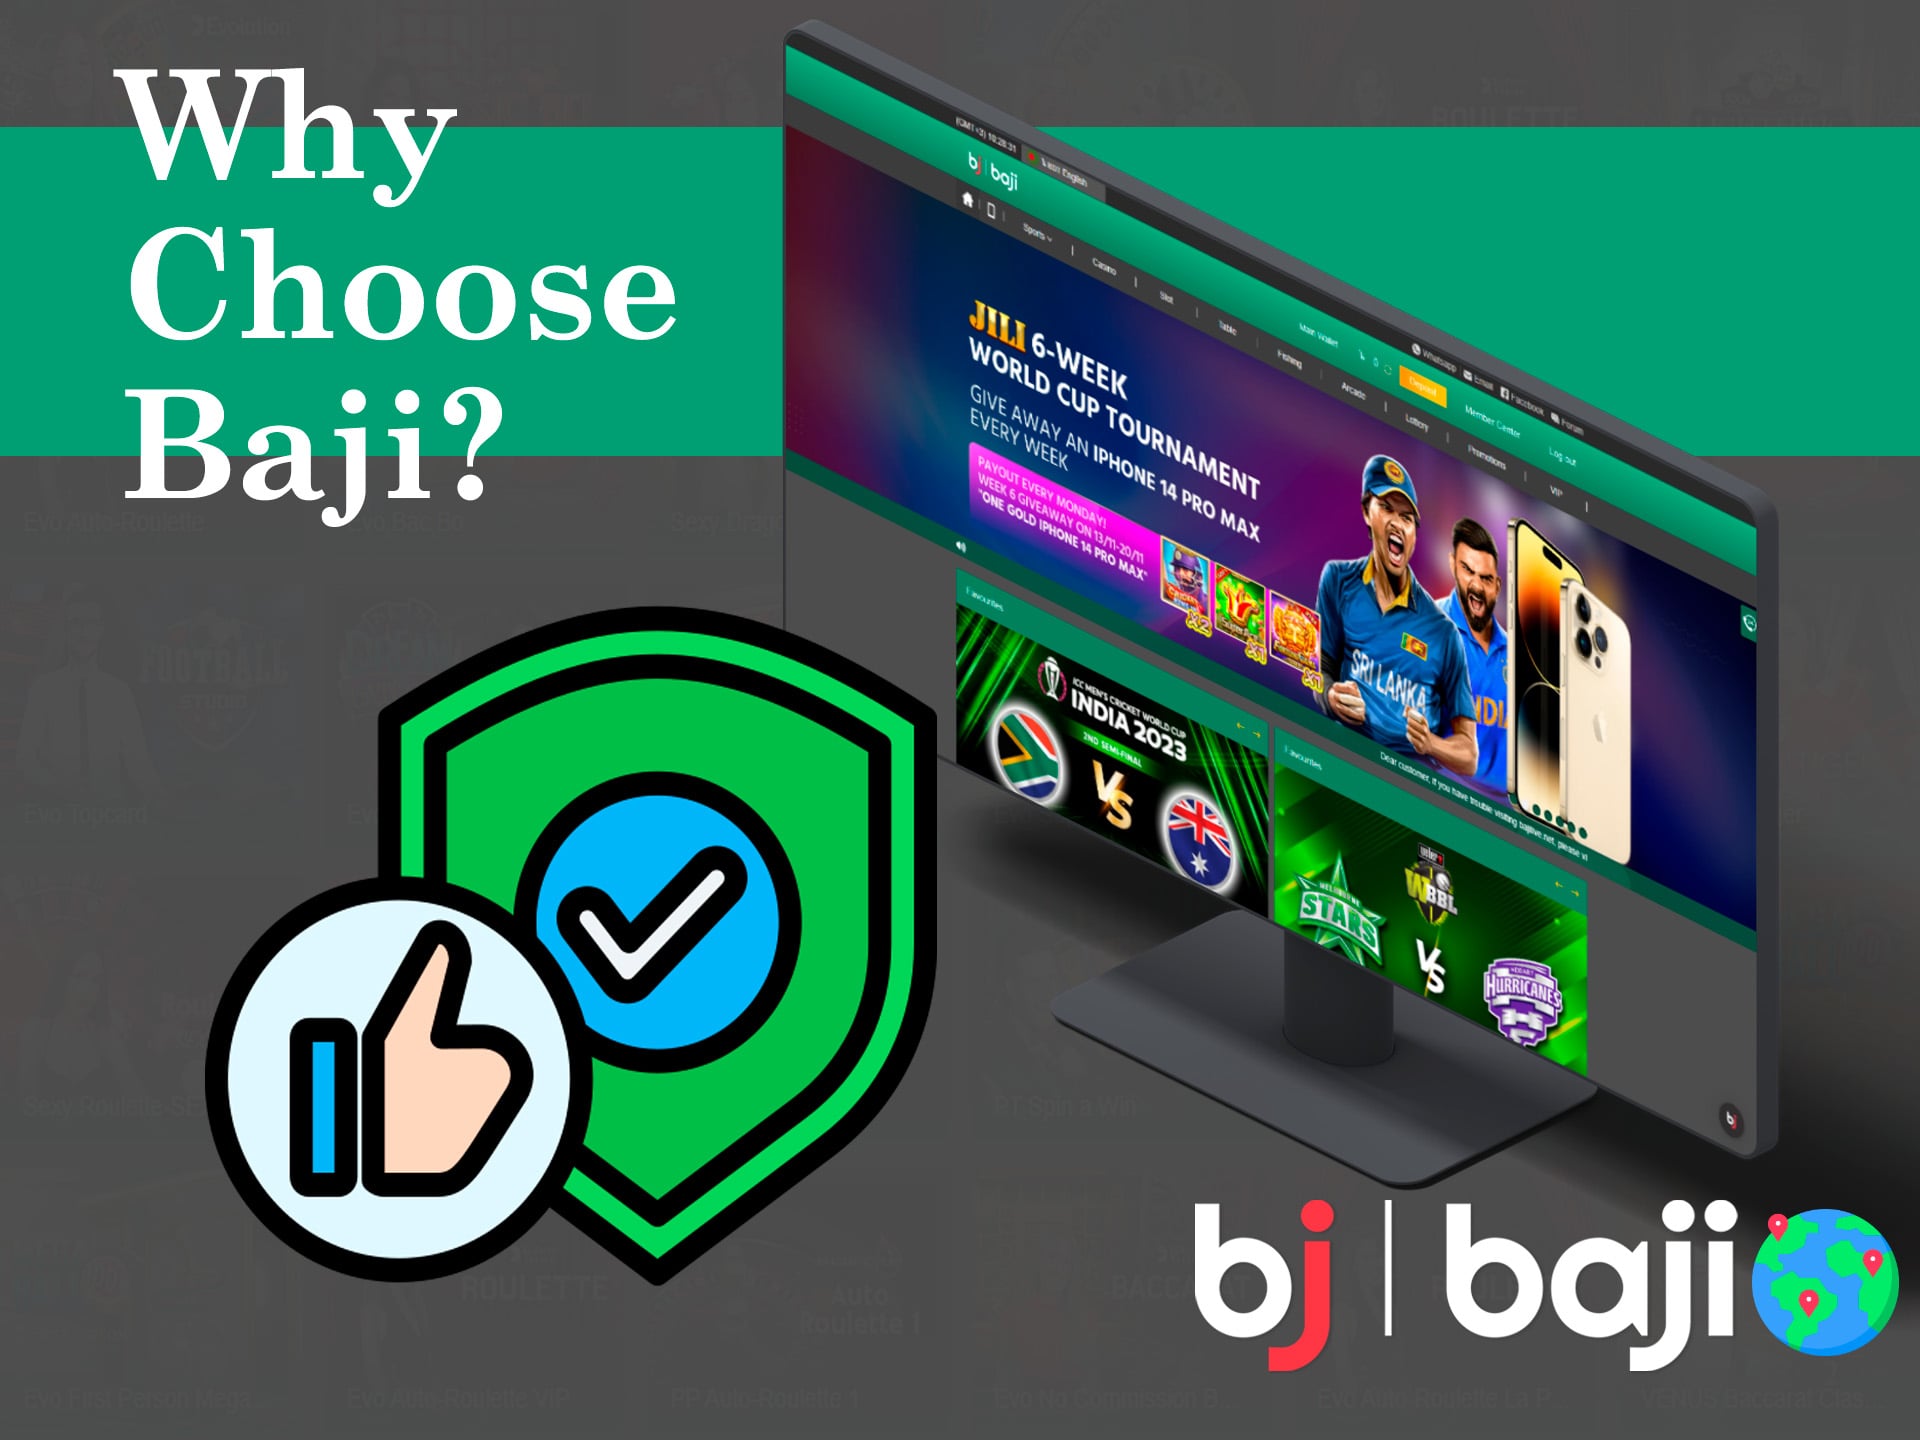 why choose bj baji?